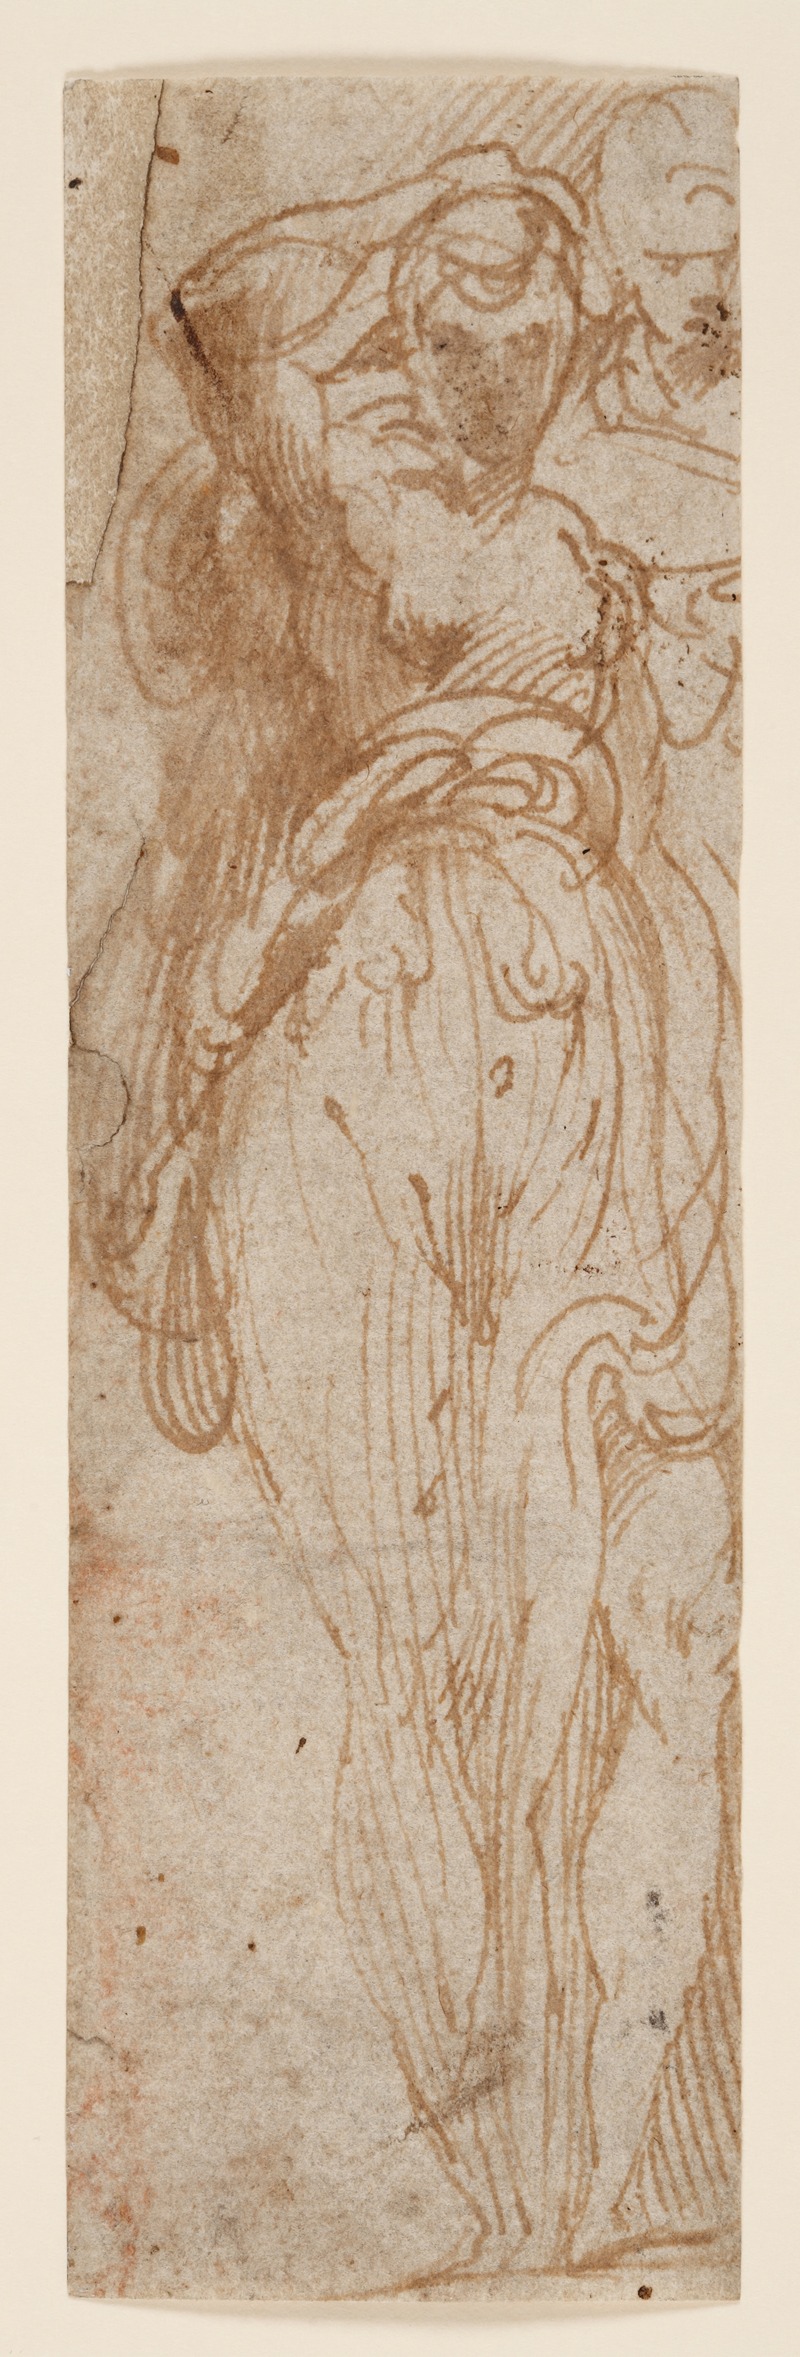 Parmigianino - Stehende Frau von vorn, die Rechte zum Kopf führend, rechts hinter ihr eine zweite Figur